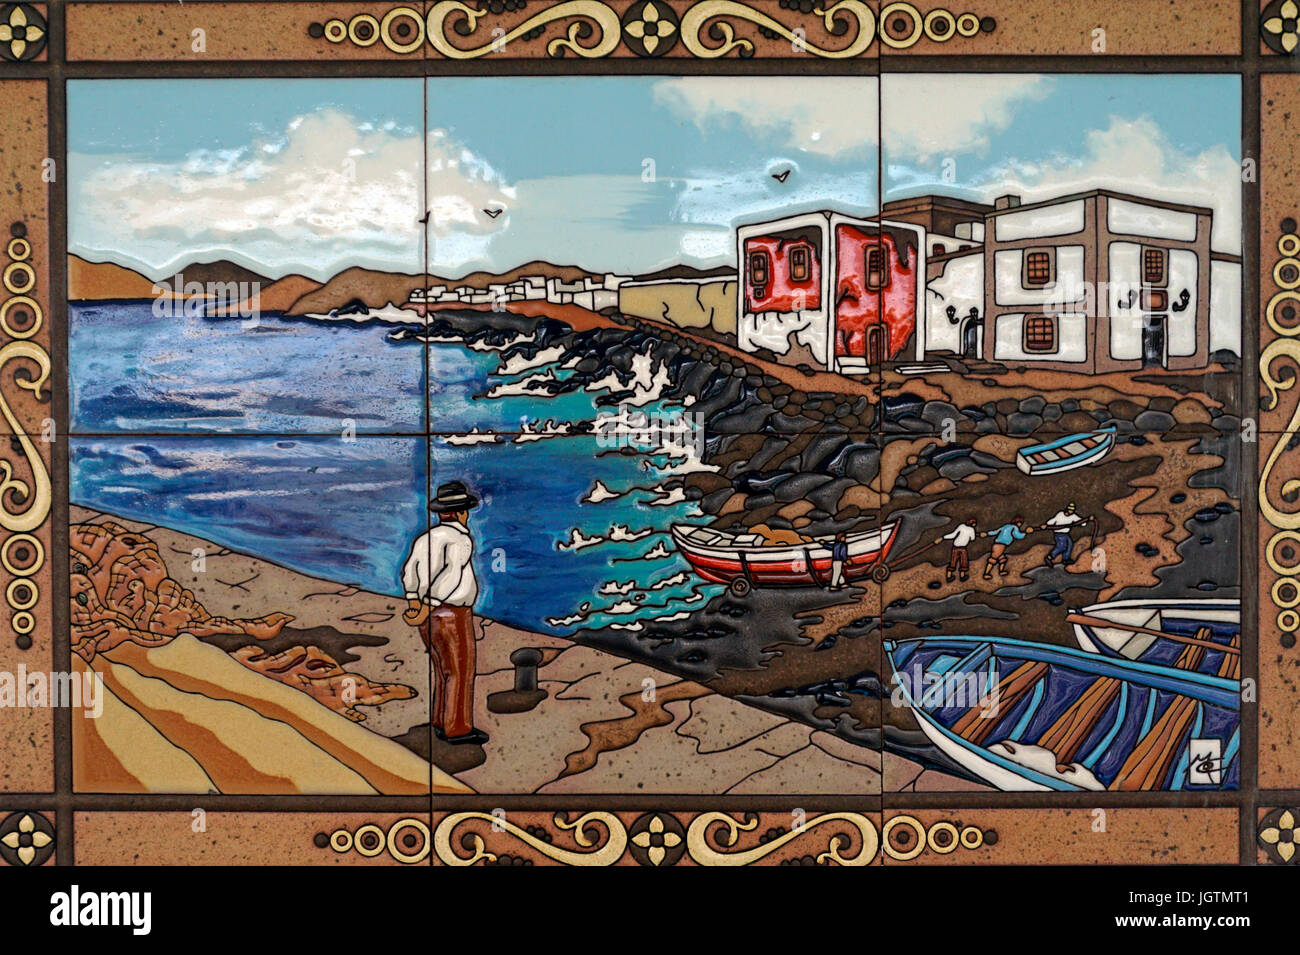 Fliese Bild zeigt eine Küste Landschaft mit Fischerbooten, Puerto del Carmen, Lanzarote, Kanarische Inseln, Spanien, Europa Stockfoto